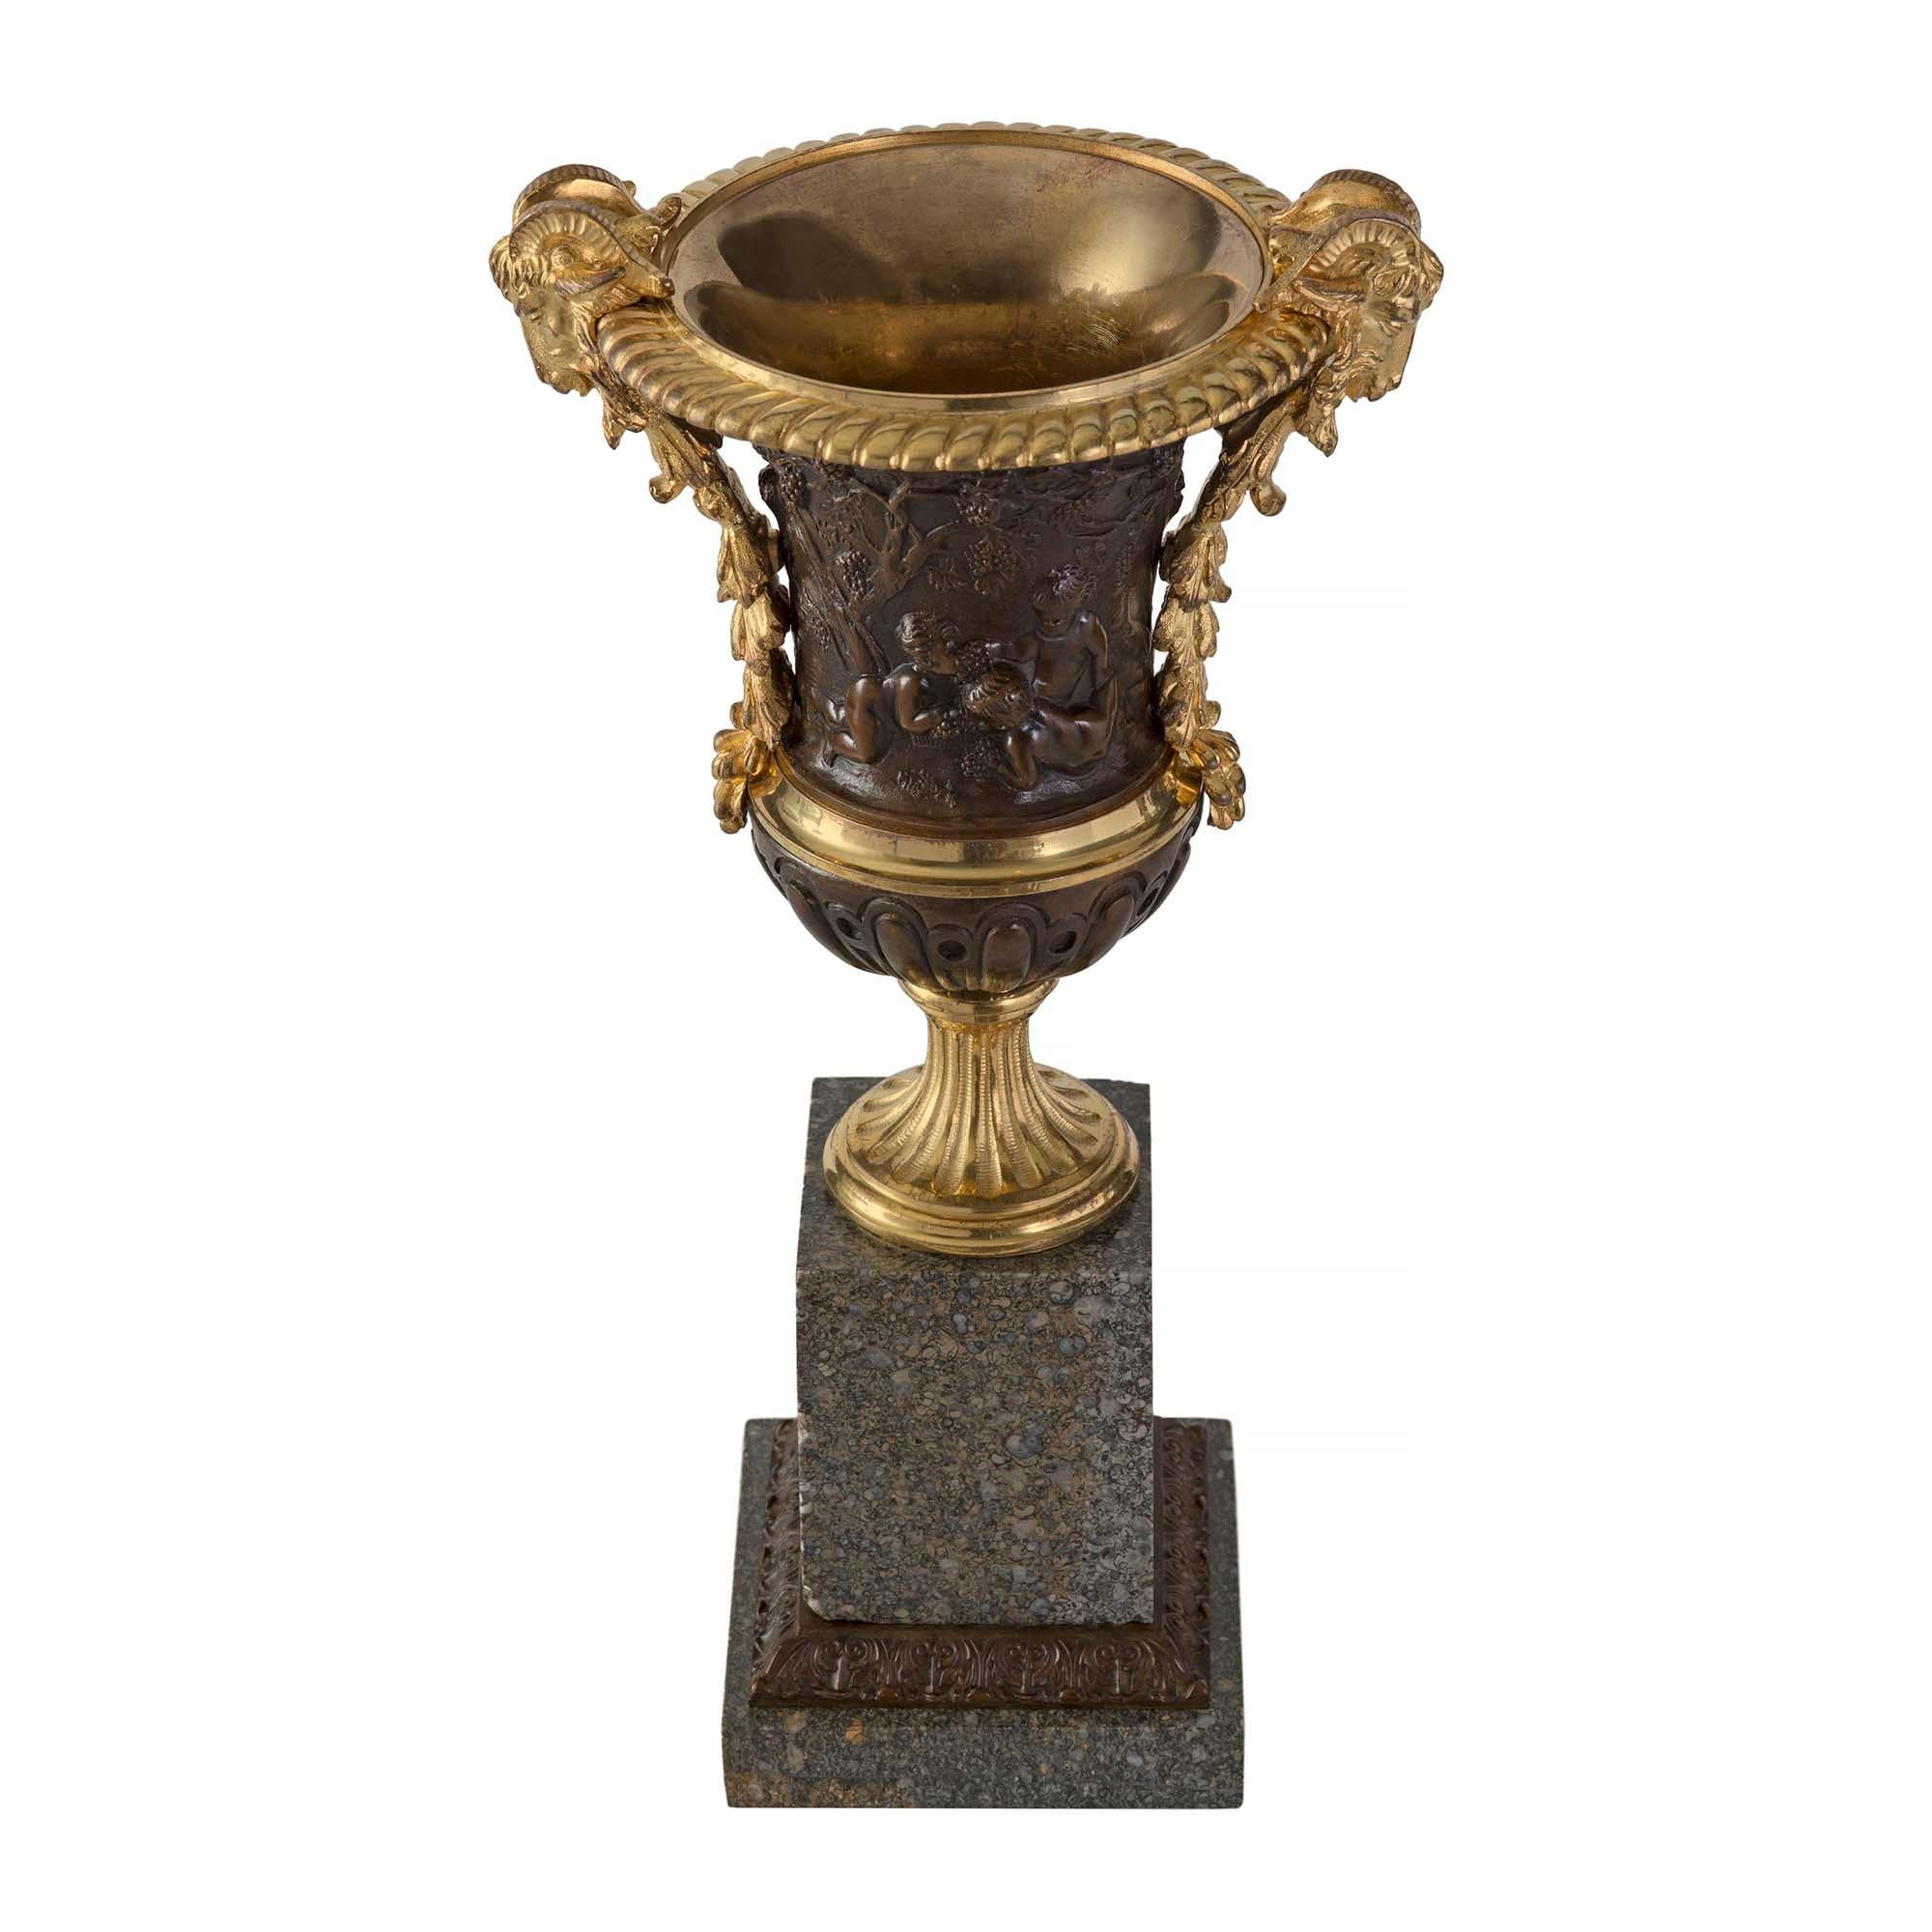 Paire de remarquables urnes françaises du XIXe siècle, de style Louis XVI, en bronze doré, bronze patiné et granit. Chaque urne est surélevée par une base carrée en granit avec une bande de bronze patiné entourée de feuillages. Le piédestal